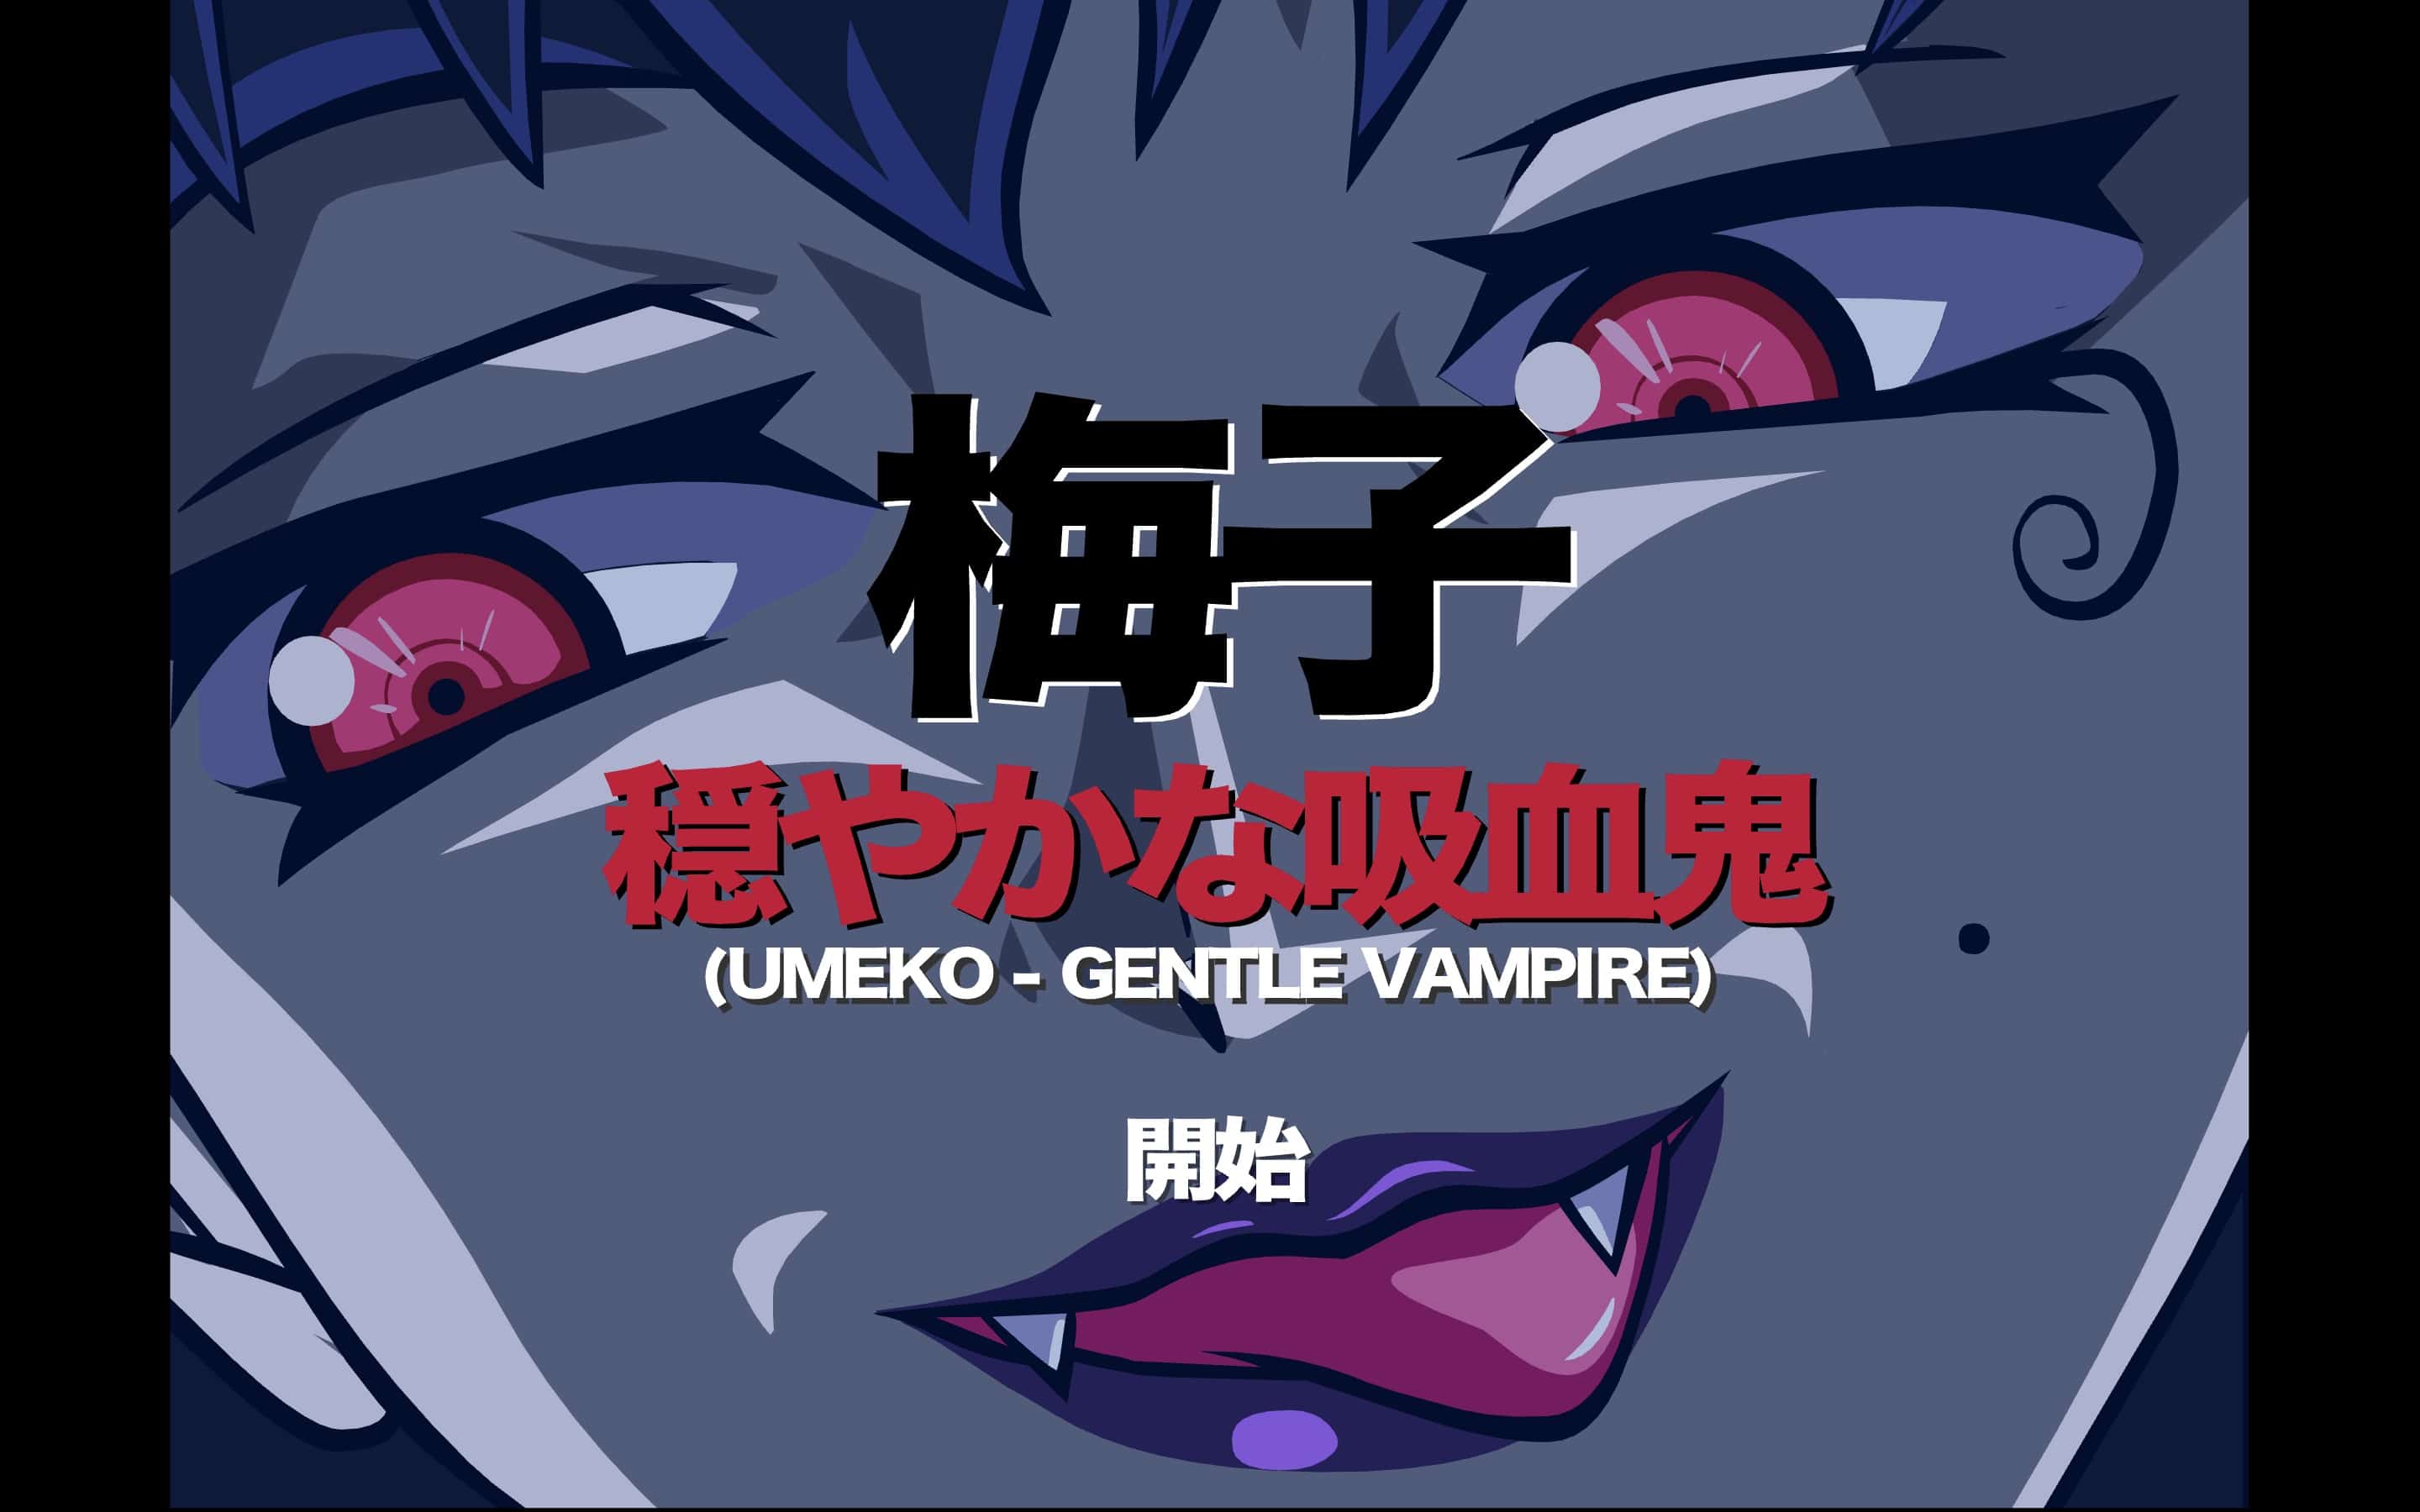 Umeko - Gentle Vampire